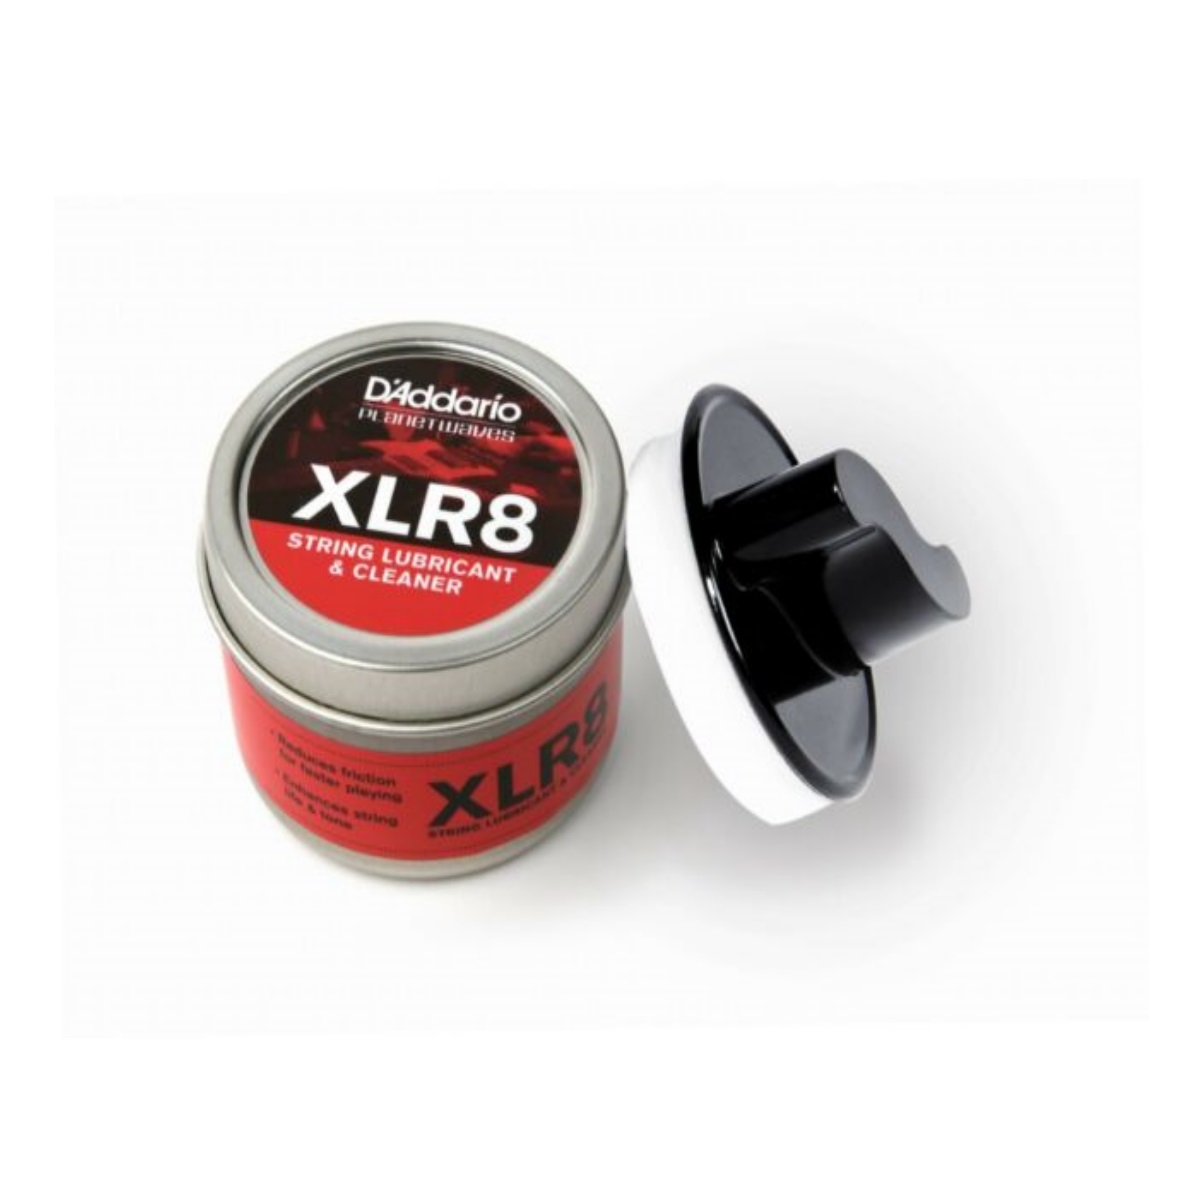 Daddario XLR8 String Lubricant&Cleaner